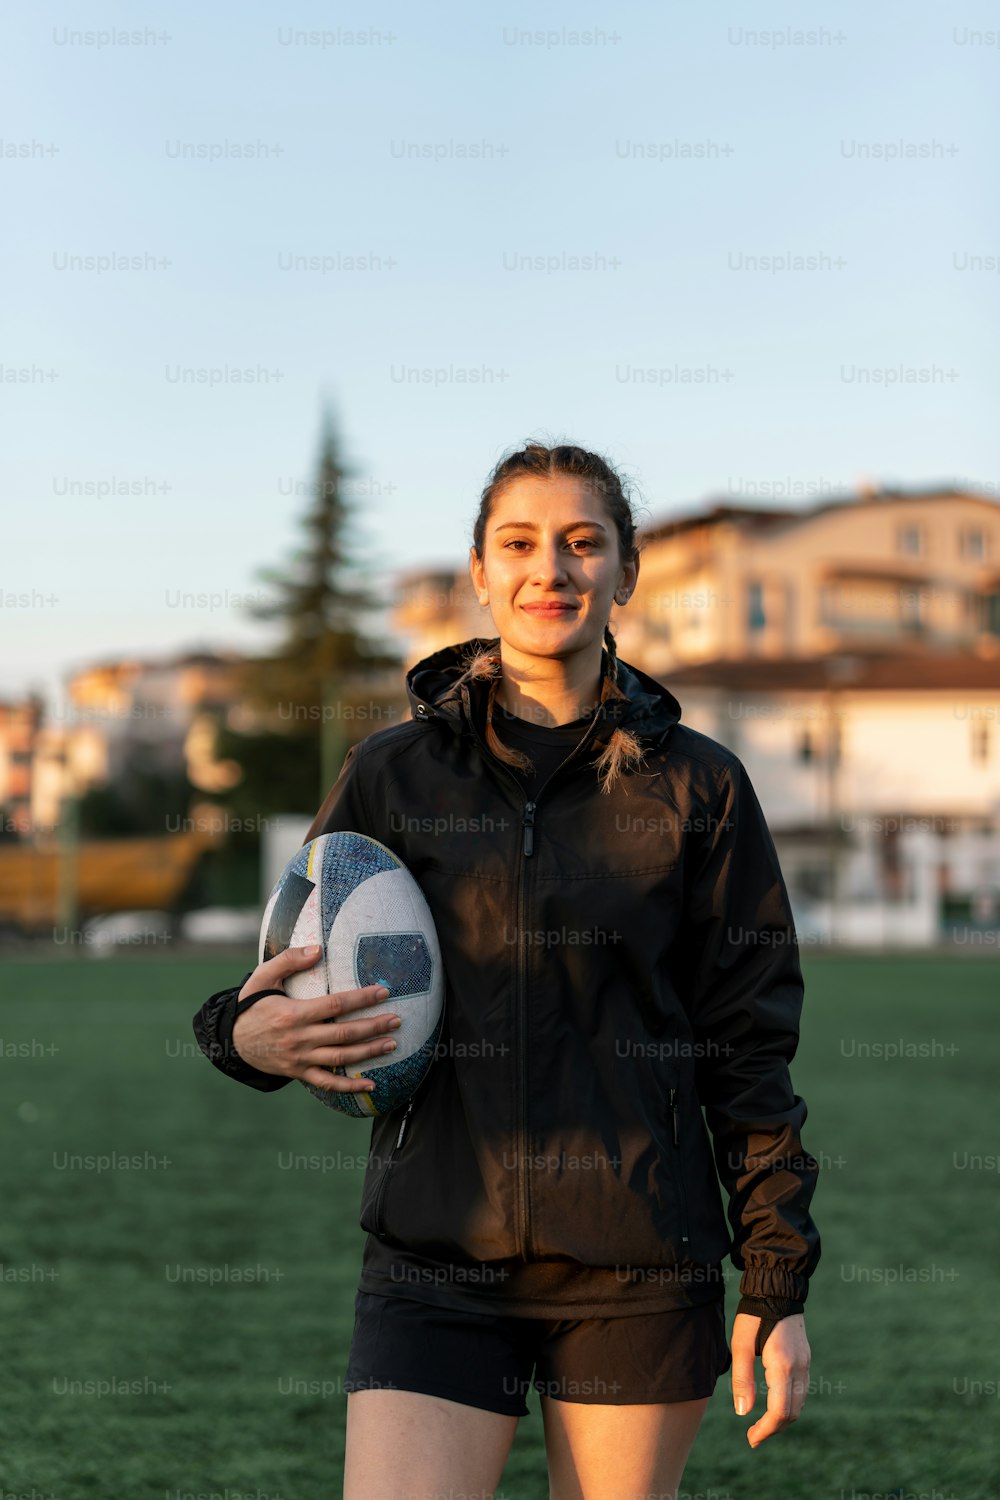 una mujer sosteniendo una pelota de fútbol en un campo